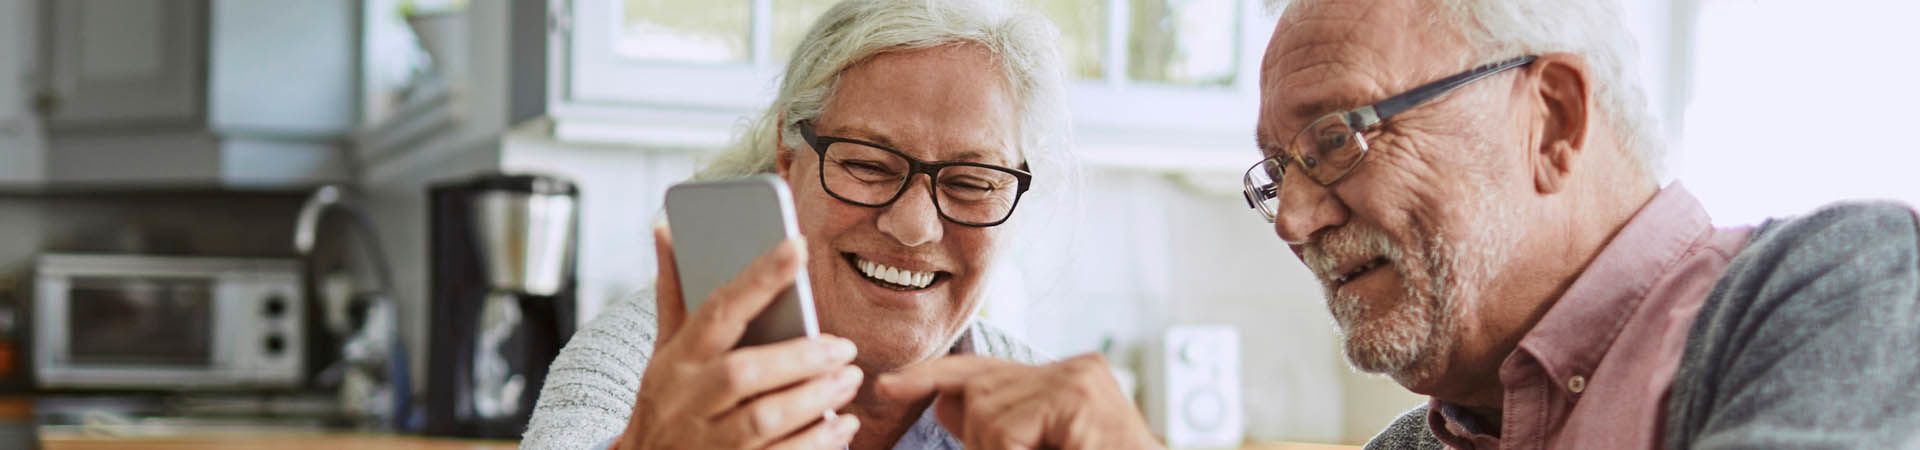 Cellulare per anziani – Una coppia di anziani fa una videochiamata con uno smartphone.